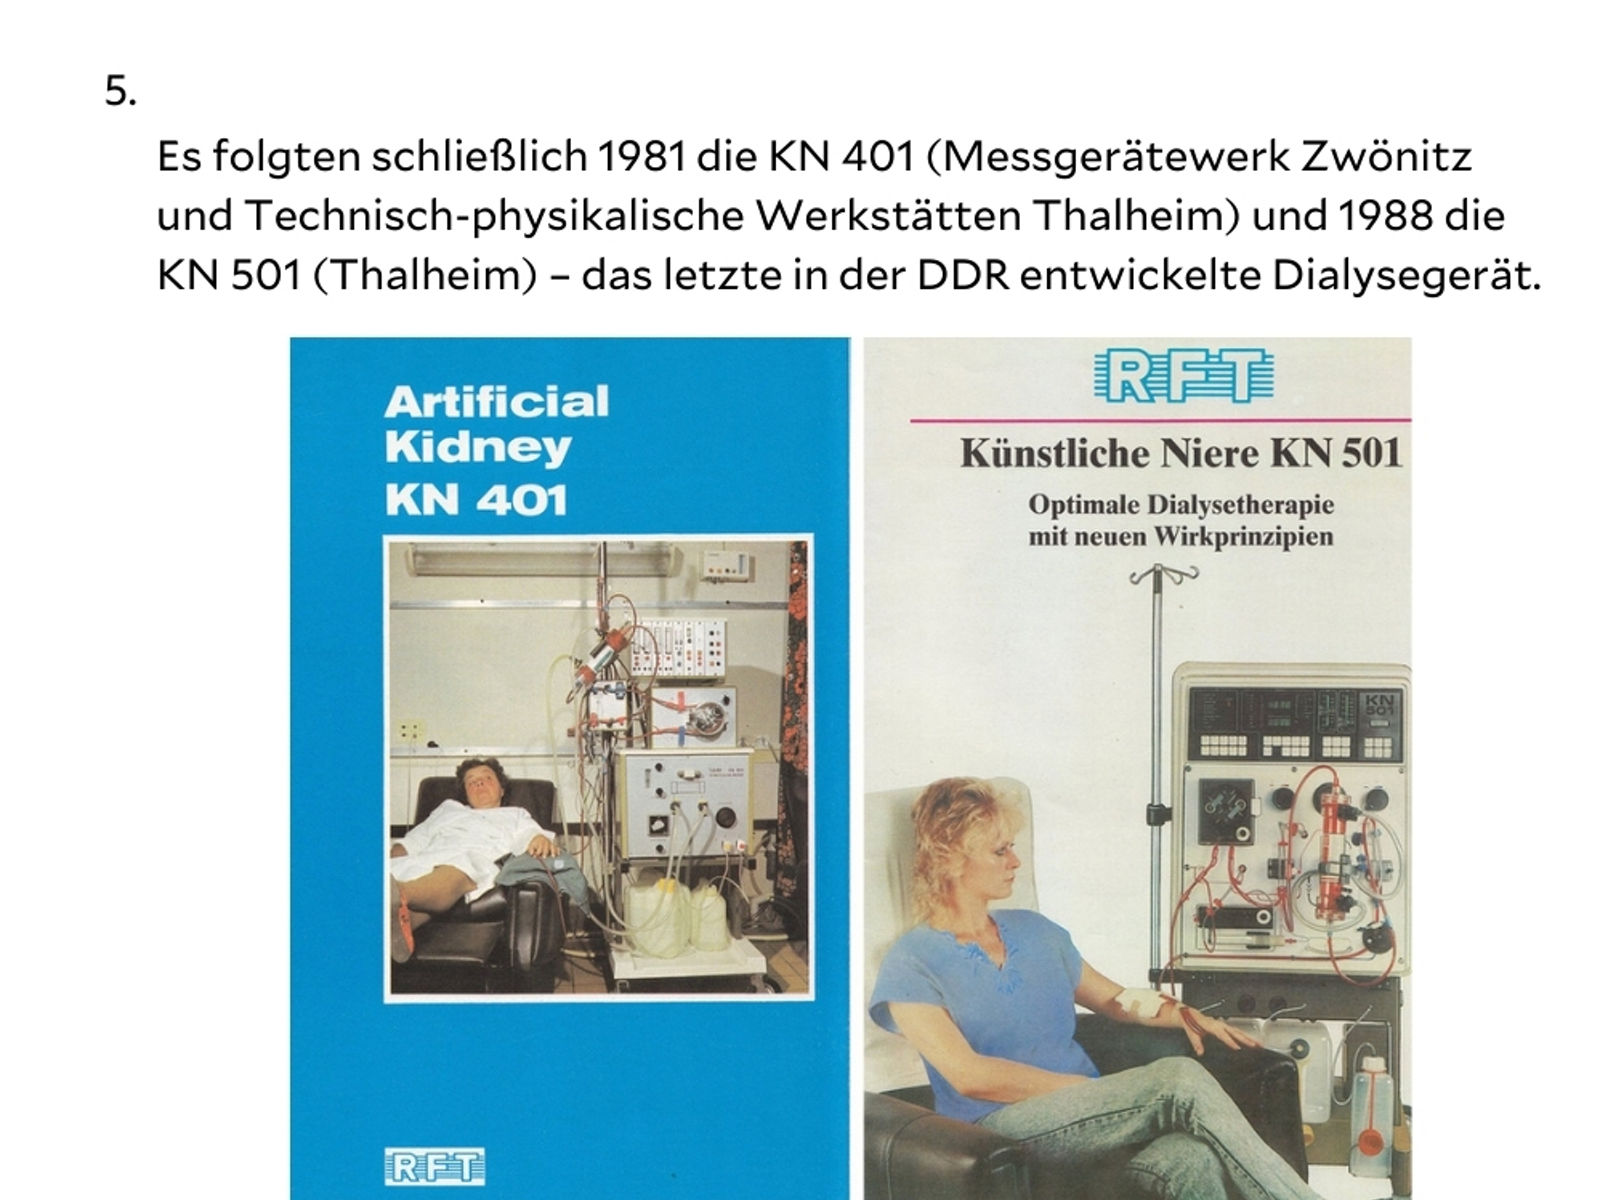 erste Dialyse in Aue  und erste Dialyse in Sachsen mit einer durch die Fa. Scheibner, Bernsbach, modifizierten „Moeller-Niere“ am 1.1.1964 - 7